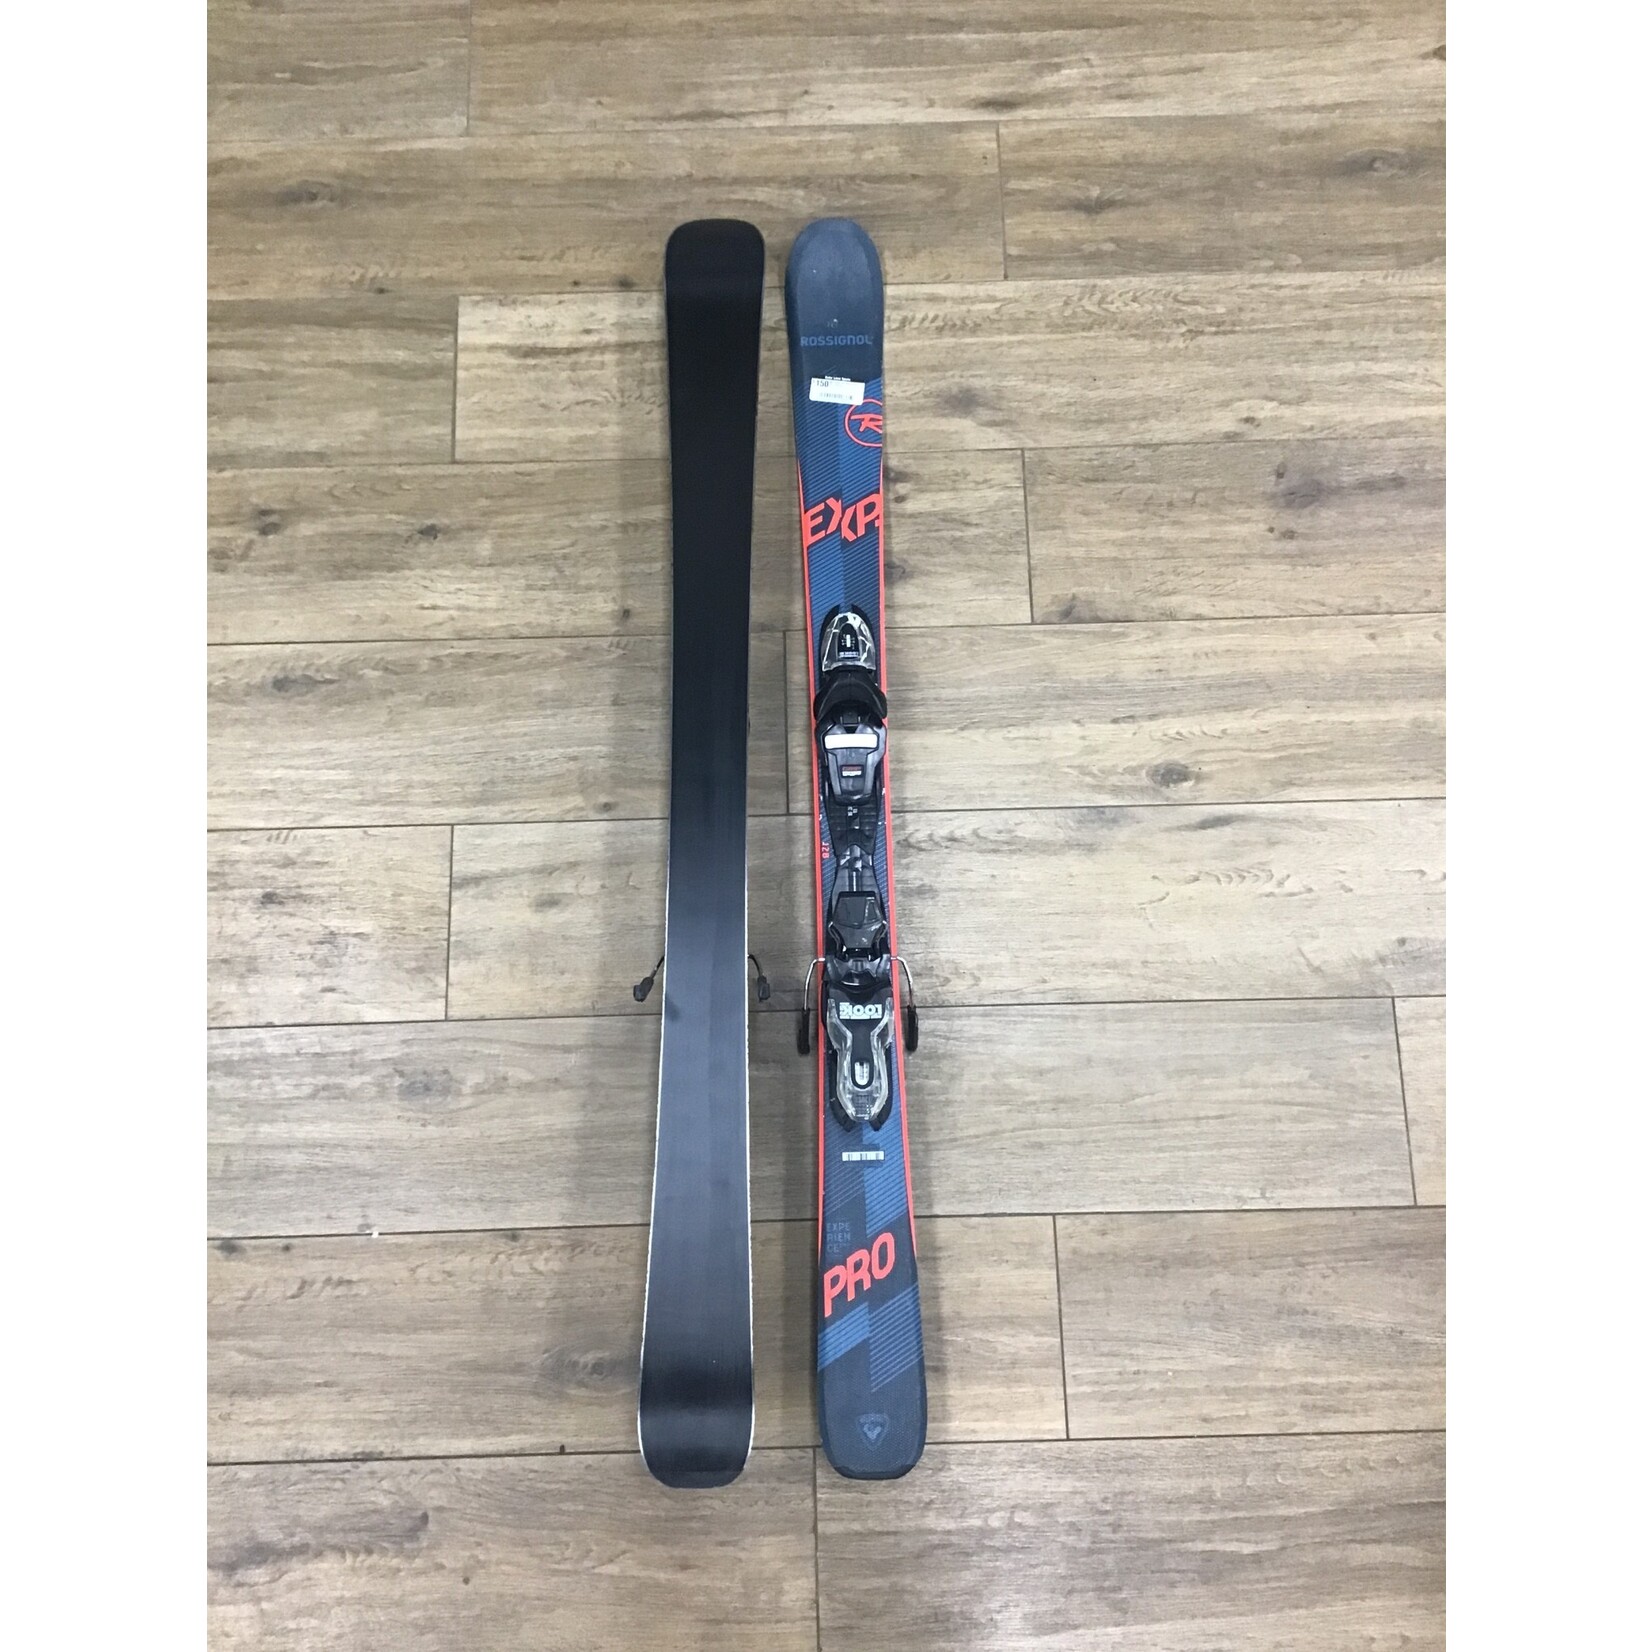 Used ski Rossi exp 128cm